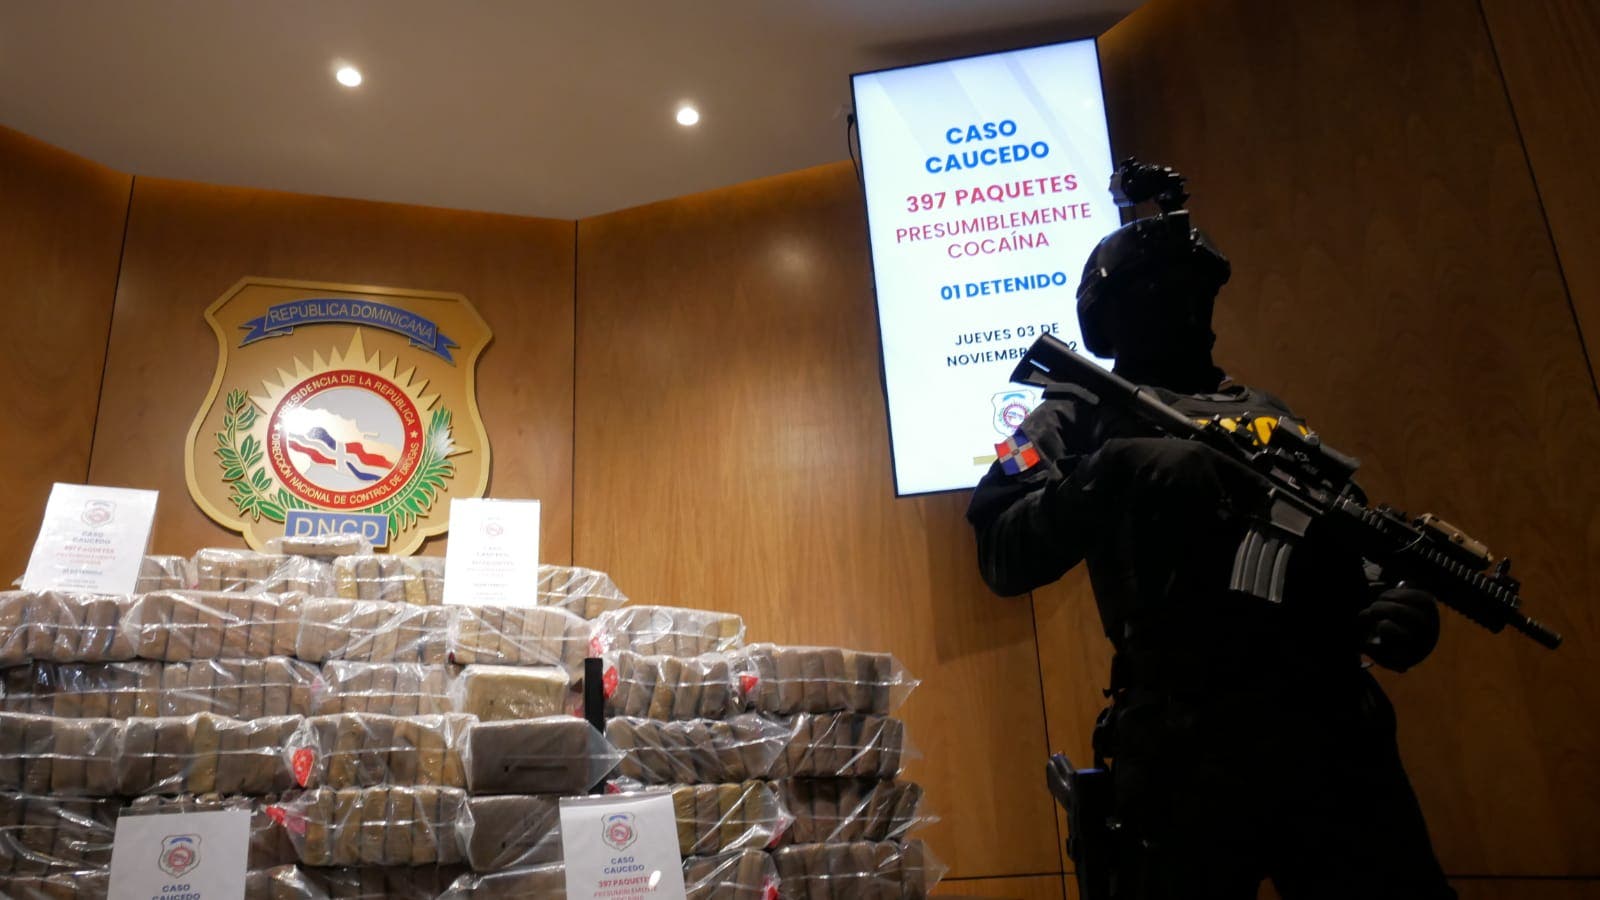 Autoridades se incautan casi 400 paquetes de cocaína serían envidos a Bélgica